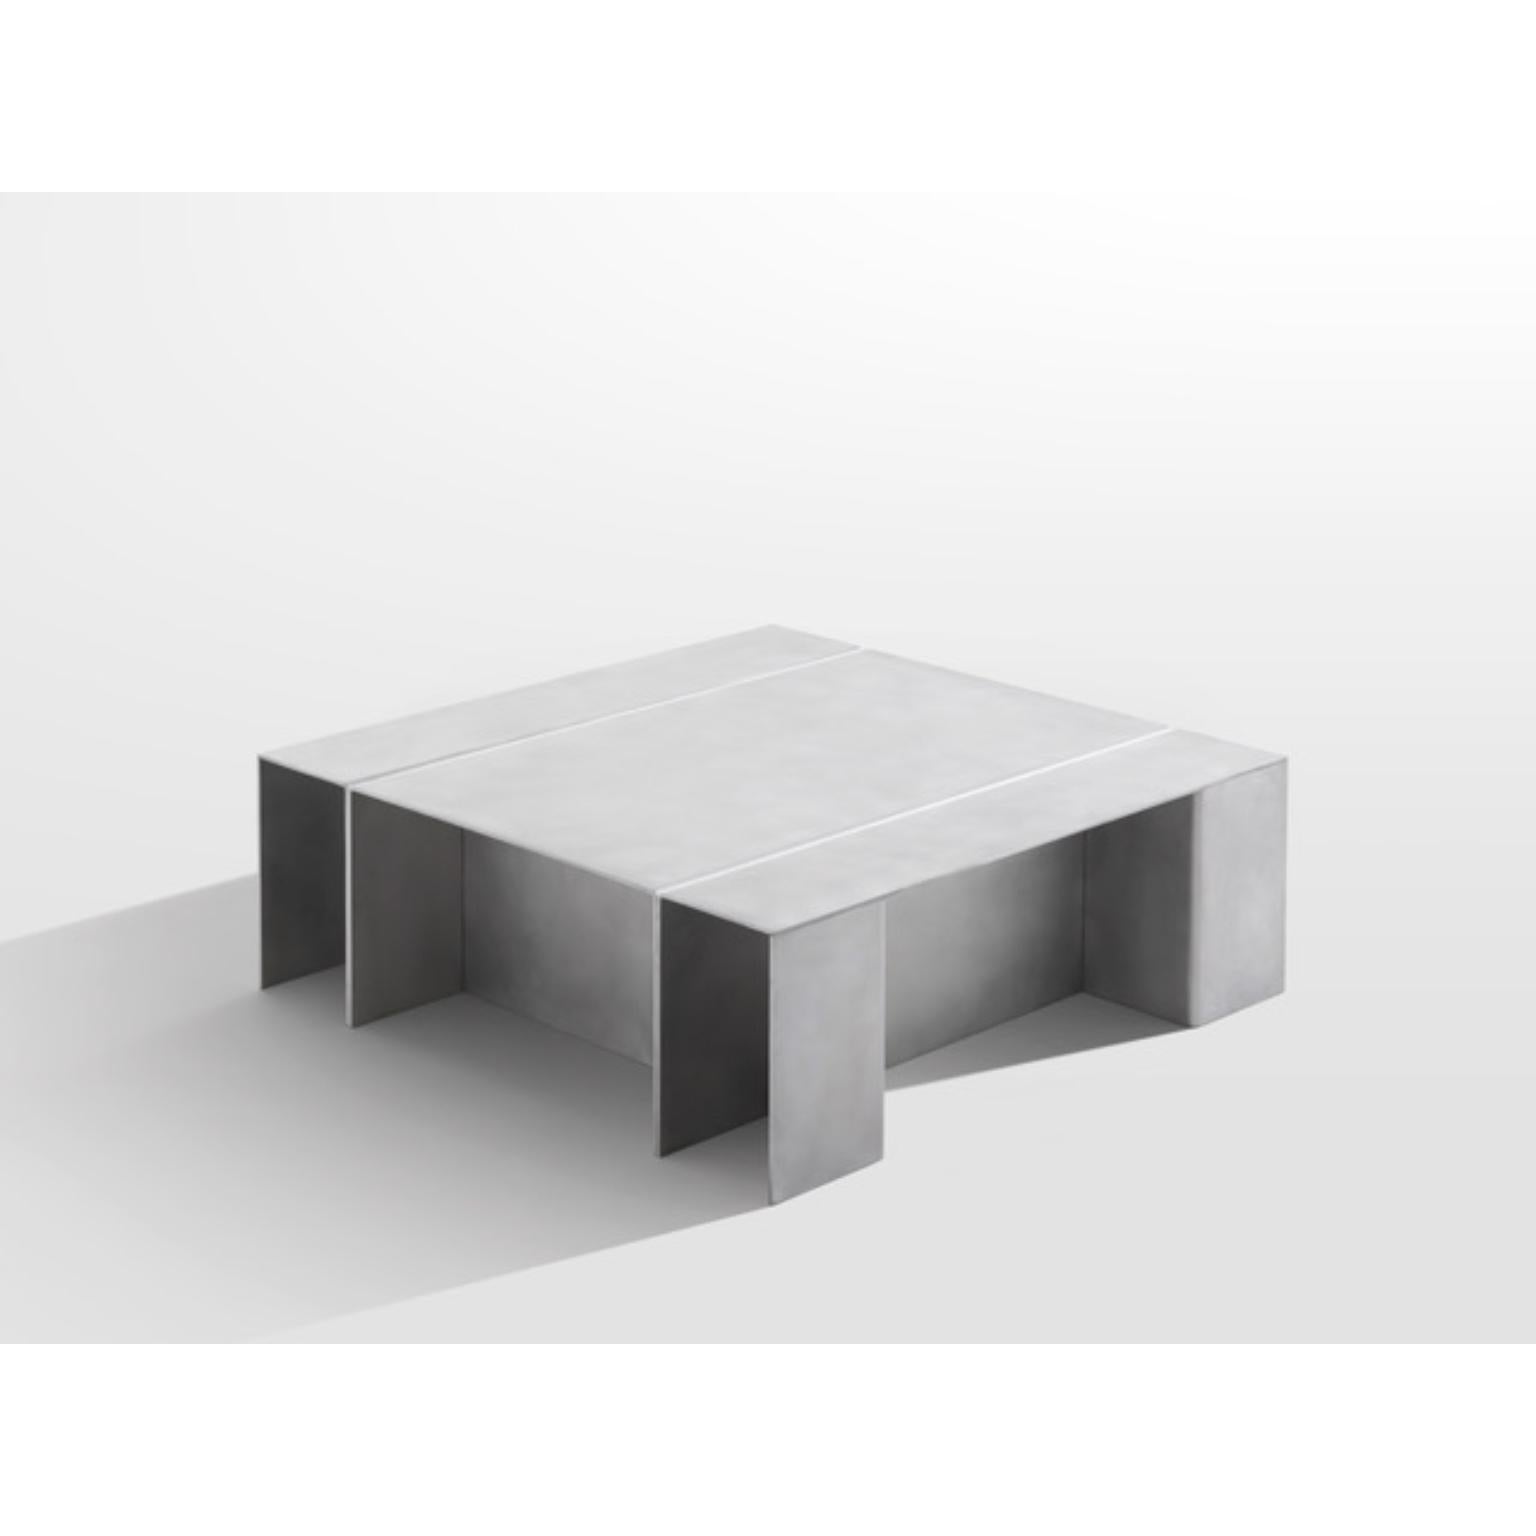 Table basse en aluminium Par Paul Coenen
Dimensions : D 100 x L 100 x H 35 cm
Matériaux : Aluminium.

Paul Coenen utilise une approche intuitive et pratique, où il explore sa fascination pour les matériaux et les techniques de fabrication à la fois